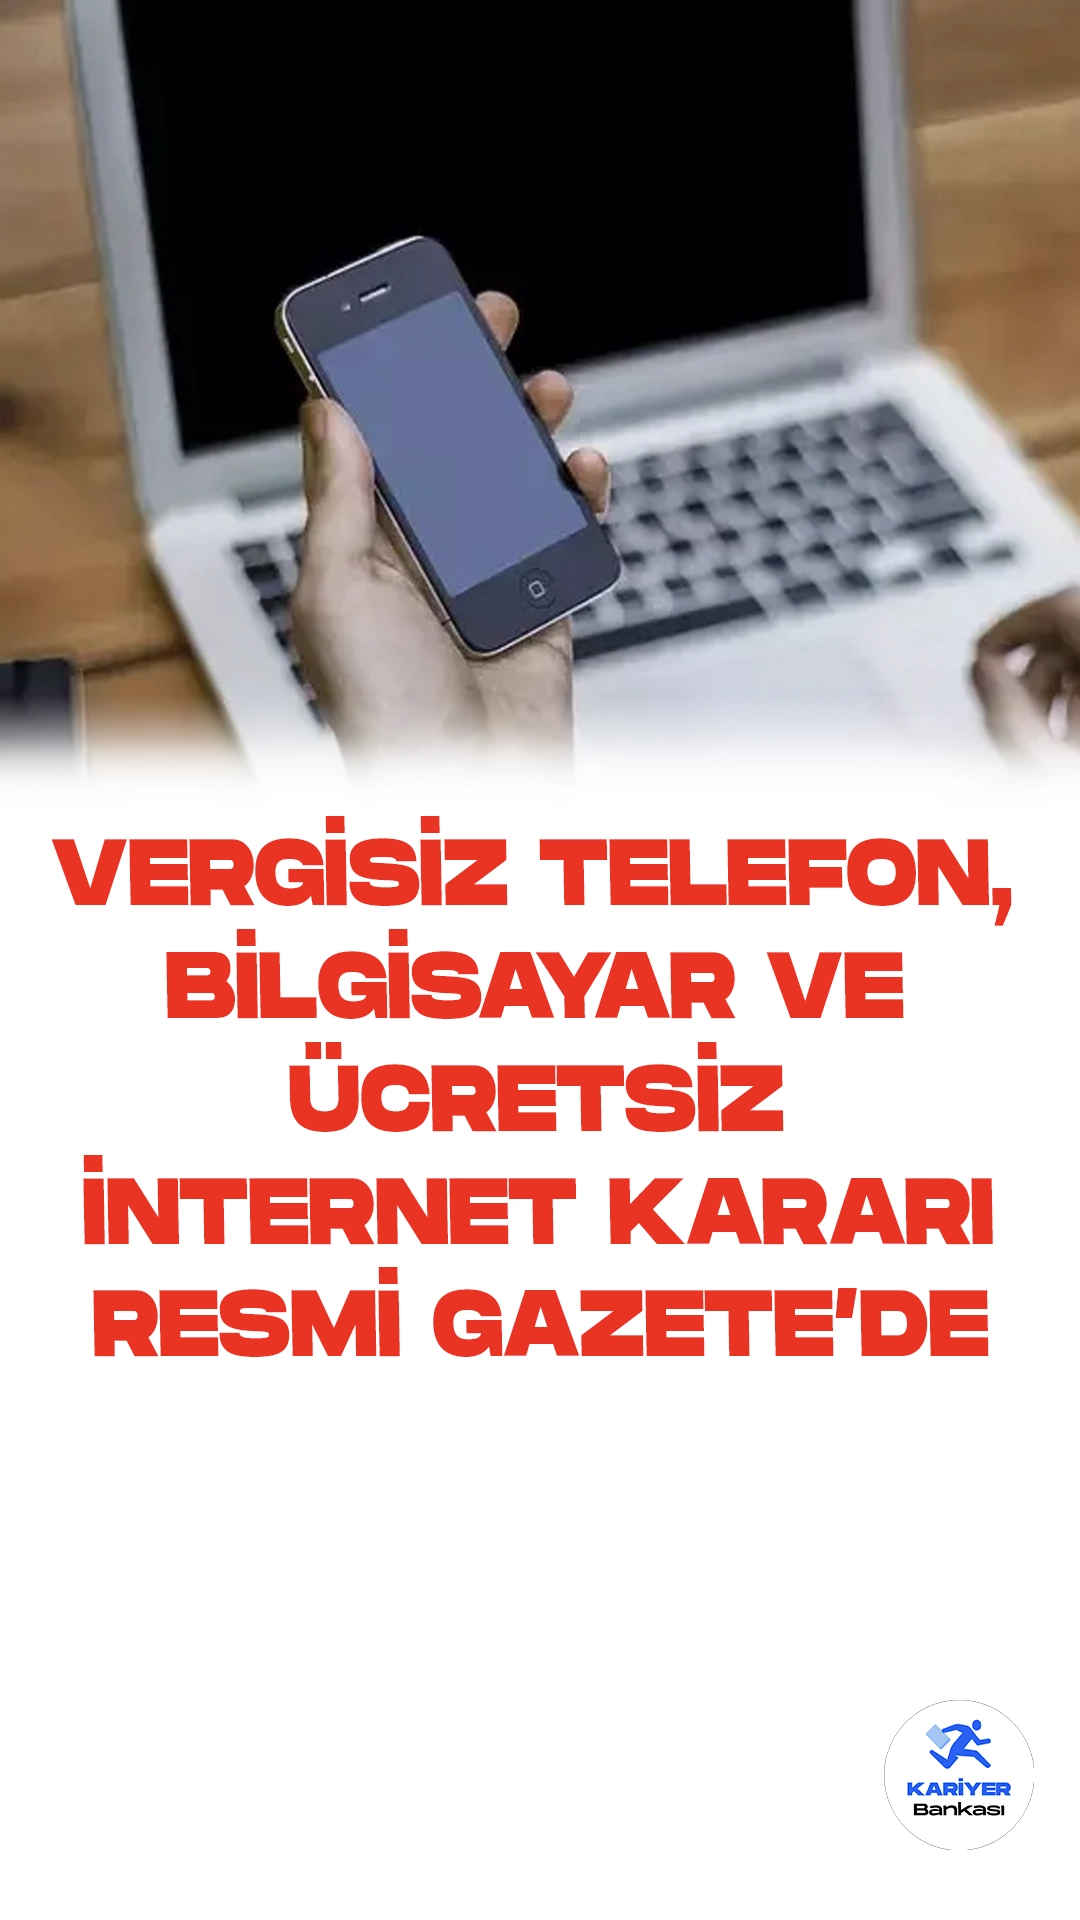 Vergisiz Telefon, Bilgisayar ve Ücretsiz 10 GB İnternet Desteği Kararı Resmi Gazete'de Yayımlandı. Cumhurbaşkanı Erdoğan'ın geçtiğimiz aylarda duyurduğu, gençlere vergisiz telefon, bilgisayar ve ücretsiz 10 GB internet desteğine ilişkin karar Cumhurbaşkanı imzasıyla Resmi Gazete'nin 25 Ekim 2023 tarihli sayısında yayımlandı. Kararın yayımlanmasıyla birlikte , yaş şartı ve başvuru tarihleri de belli oldu.